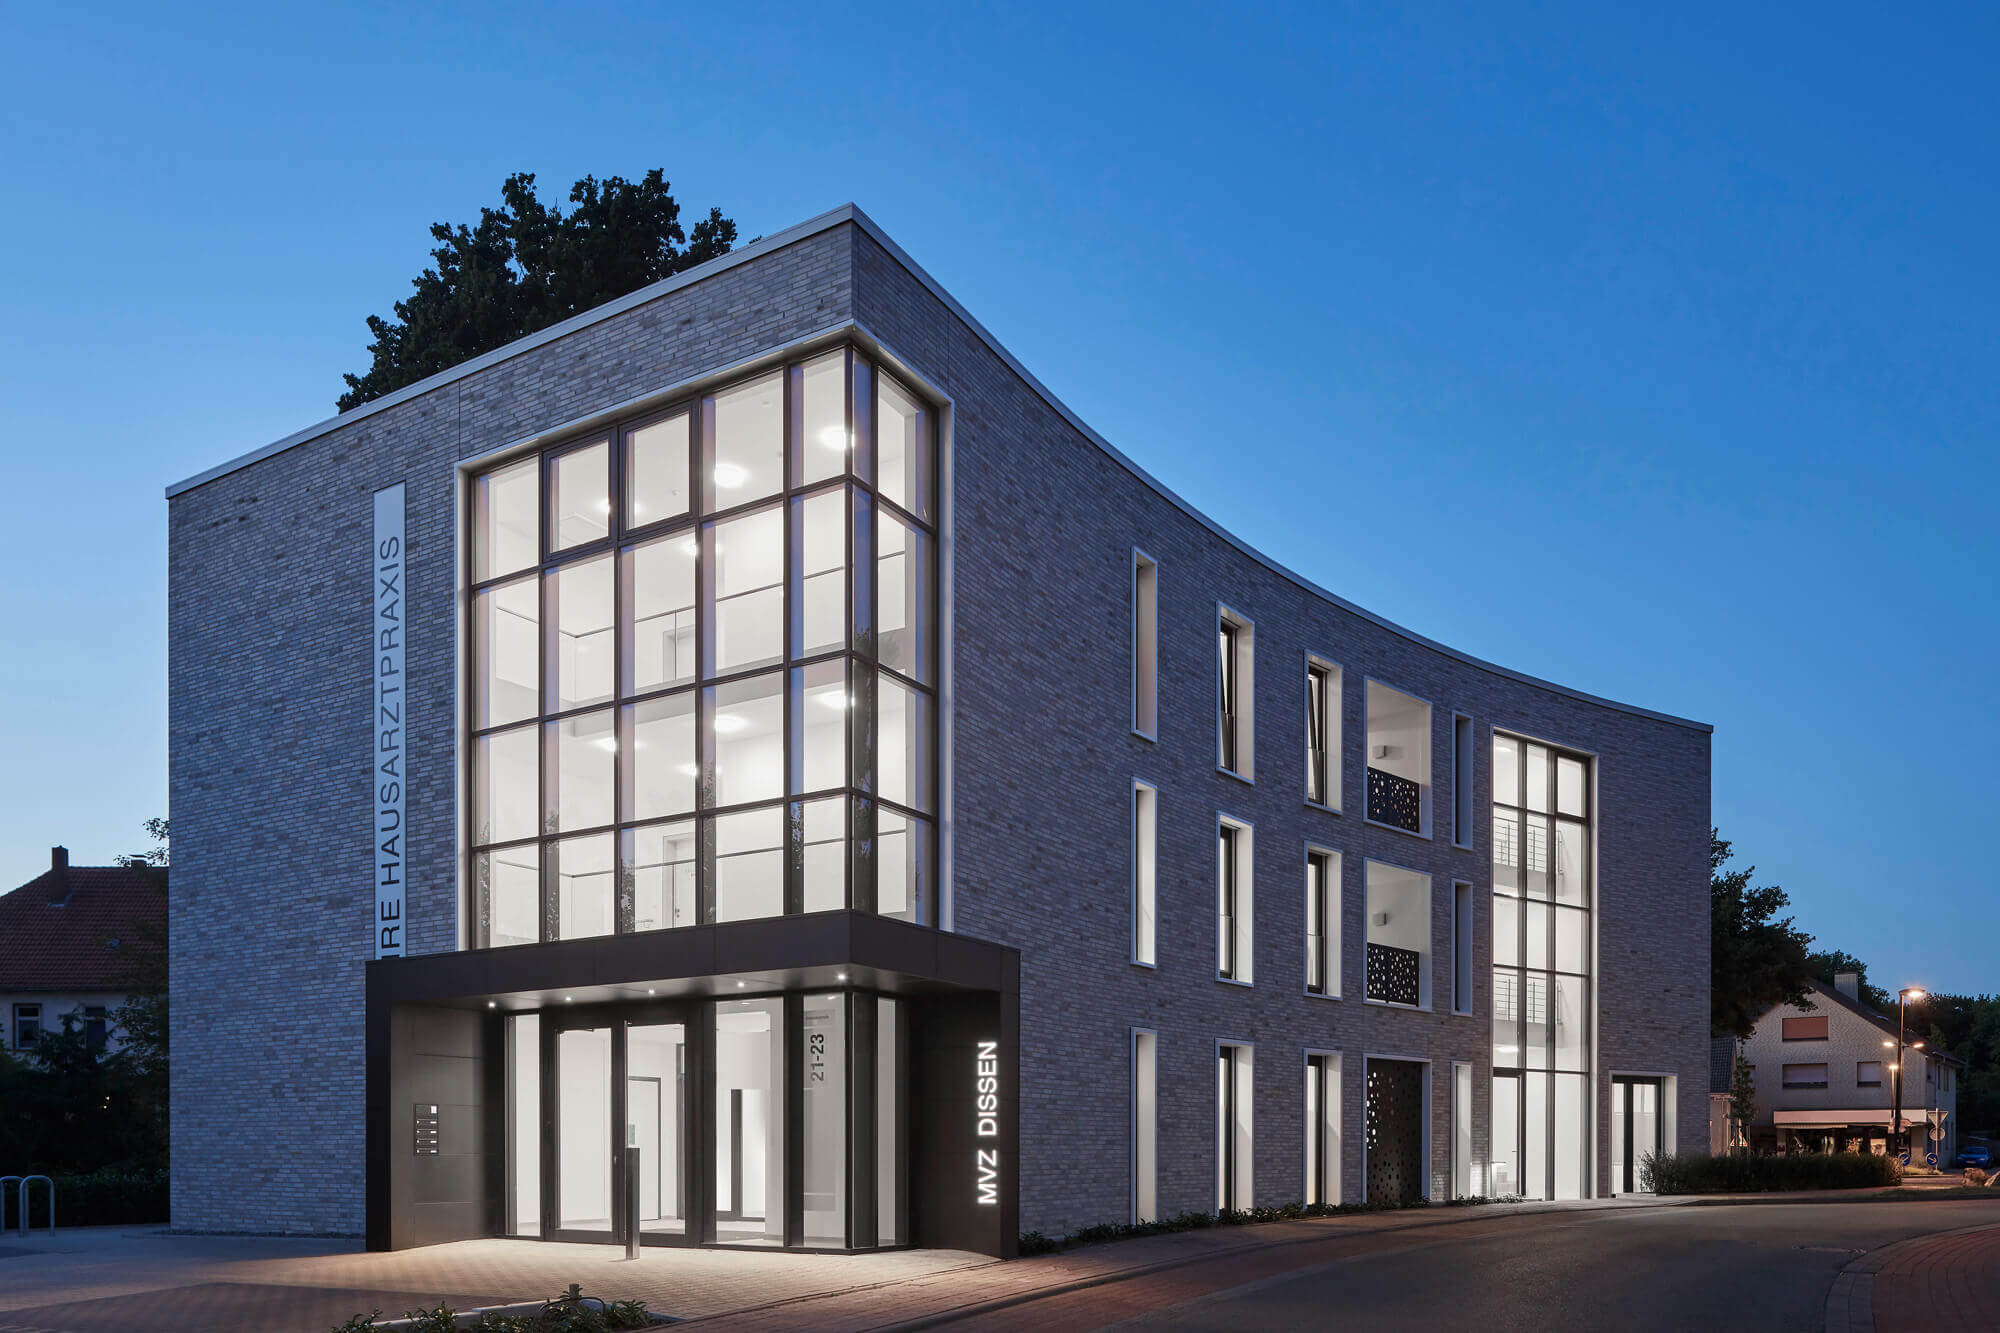 Neubau eines modernen Ärztehauses in Dissen mit hochwertiger Klinkerfassade